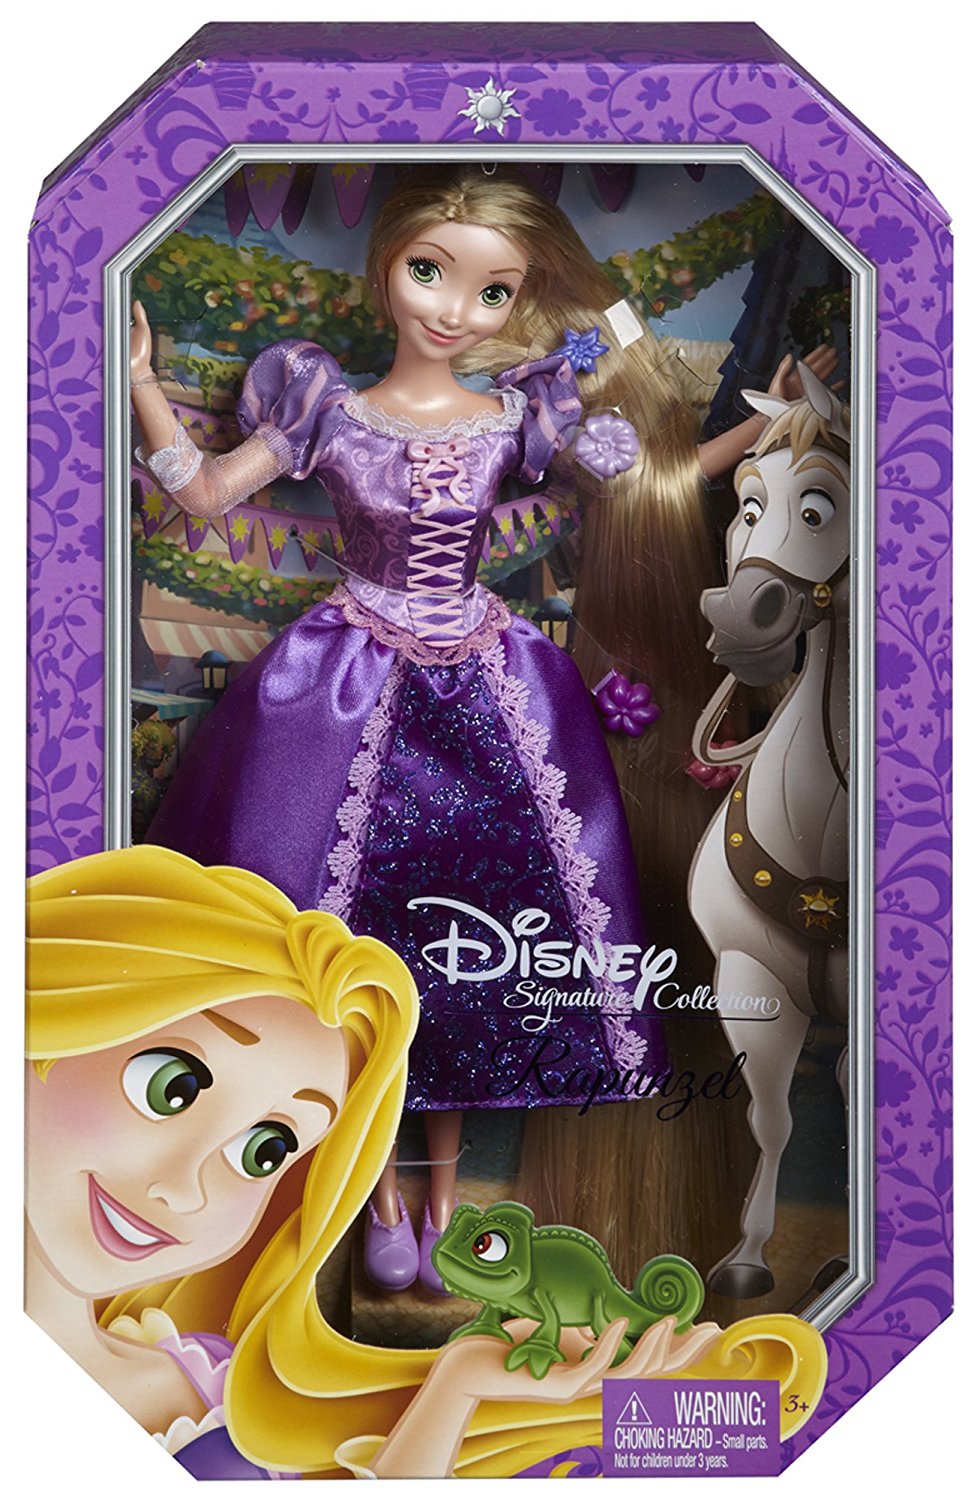 Коллекционная Принцесса Disney - Рапунцель  